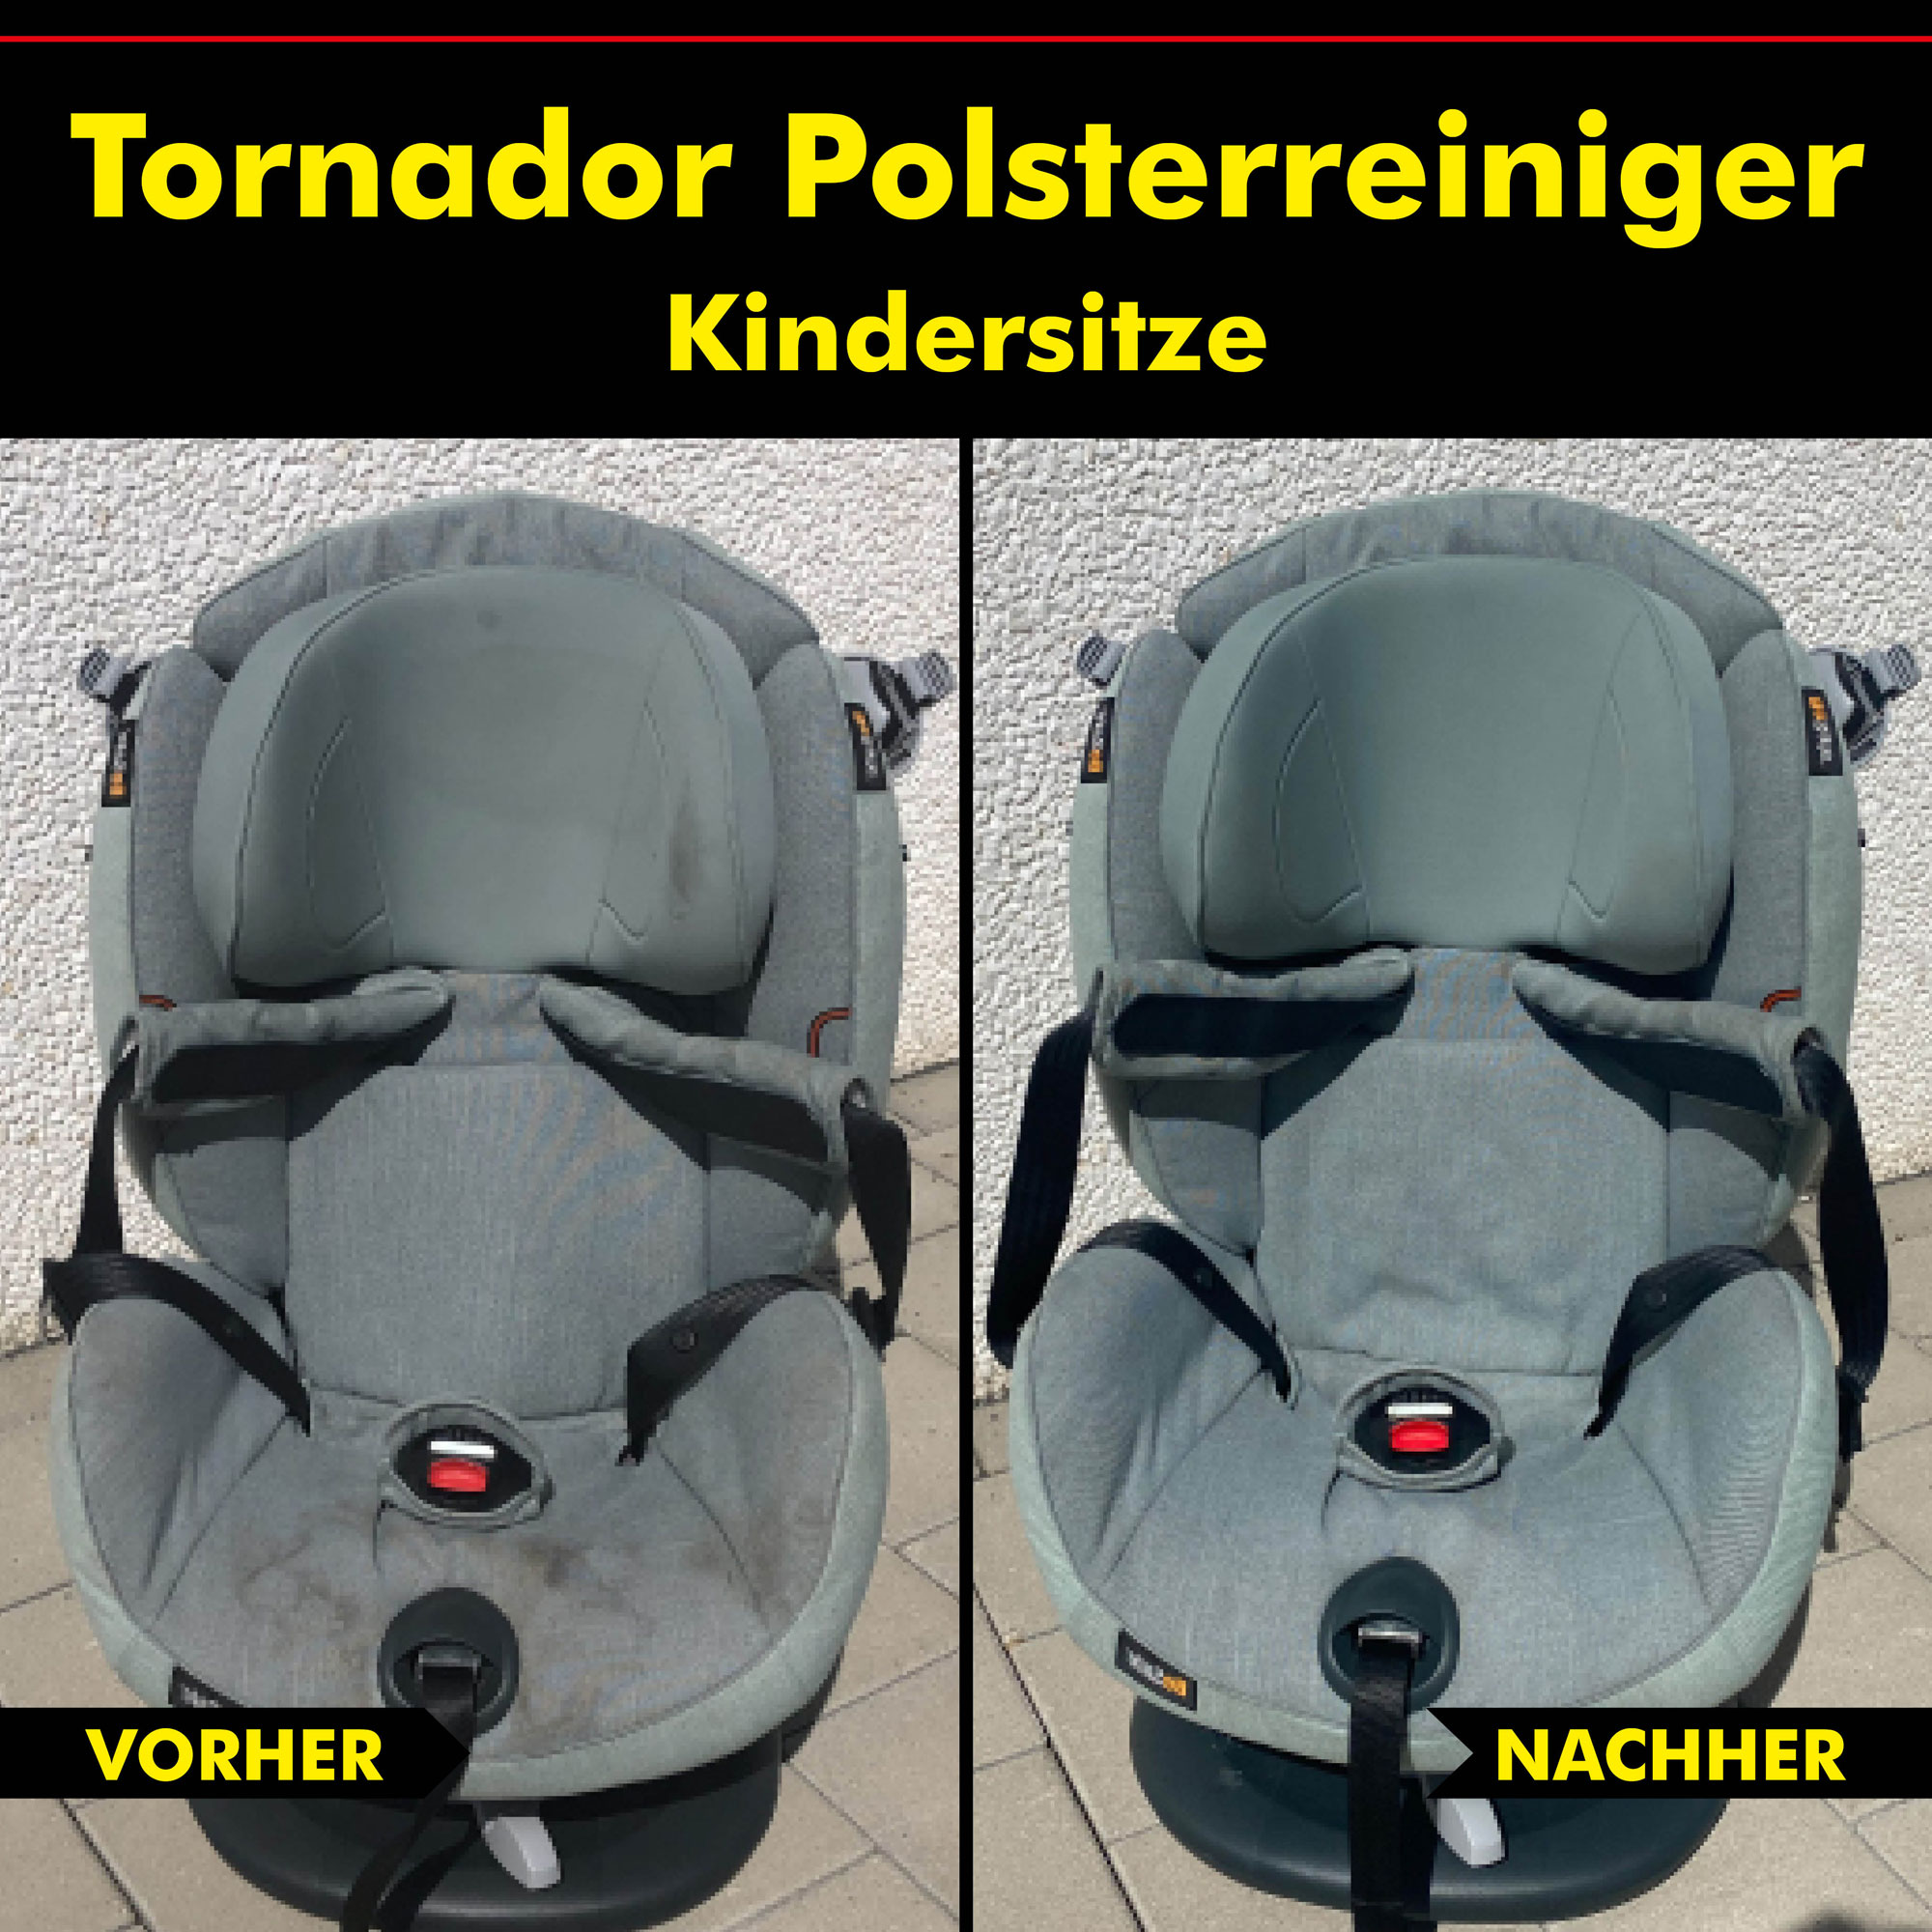 Polsterreiniger Kindersitz, Tornador Reiniger, Mittel Reinigungspistole, Polster-reiniger vorher nachher